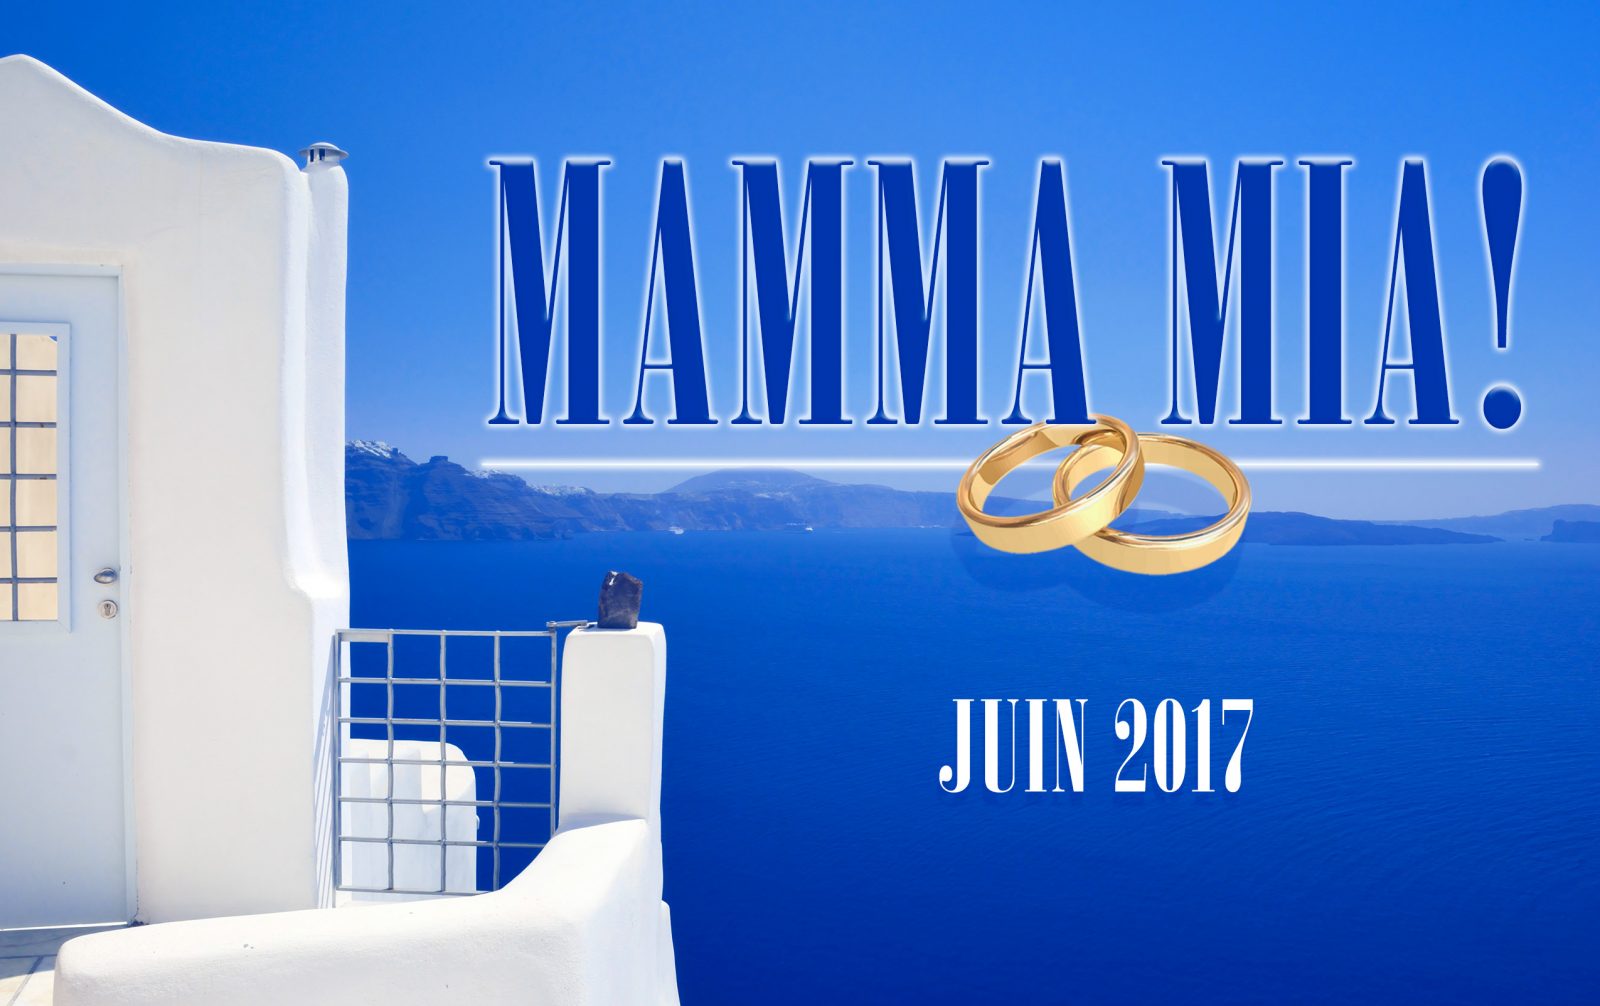 Les Productions Alfred recrutent pour Mamma Mia